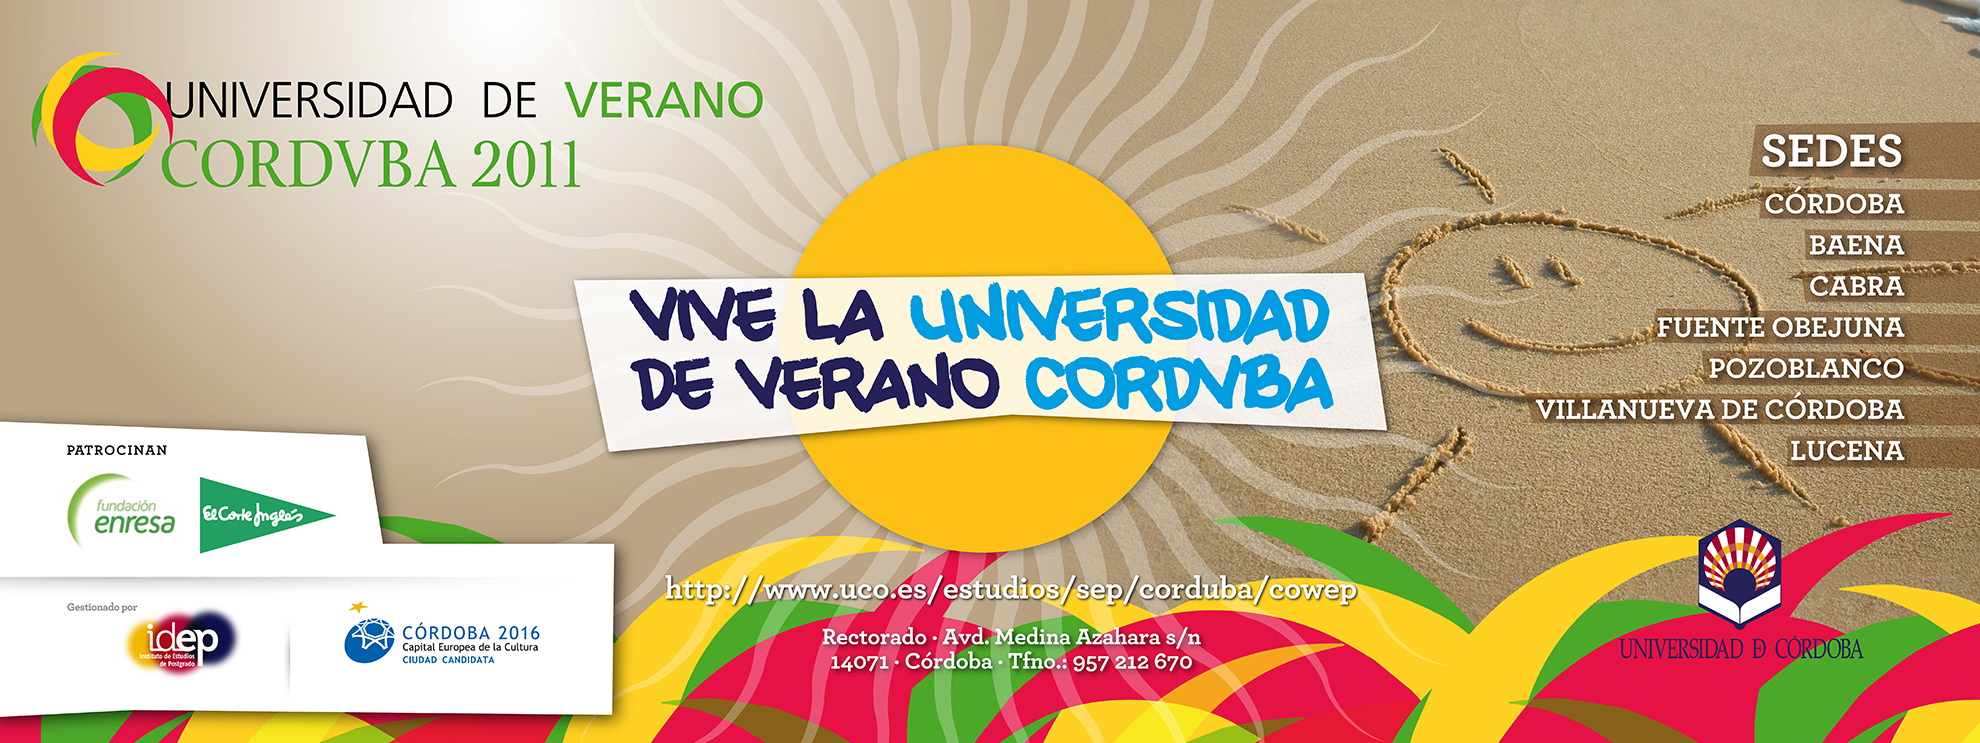 Campaña de publicidad Universidad de Verano Corduba